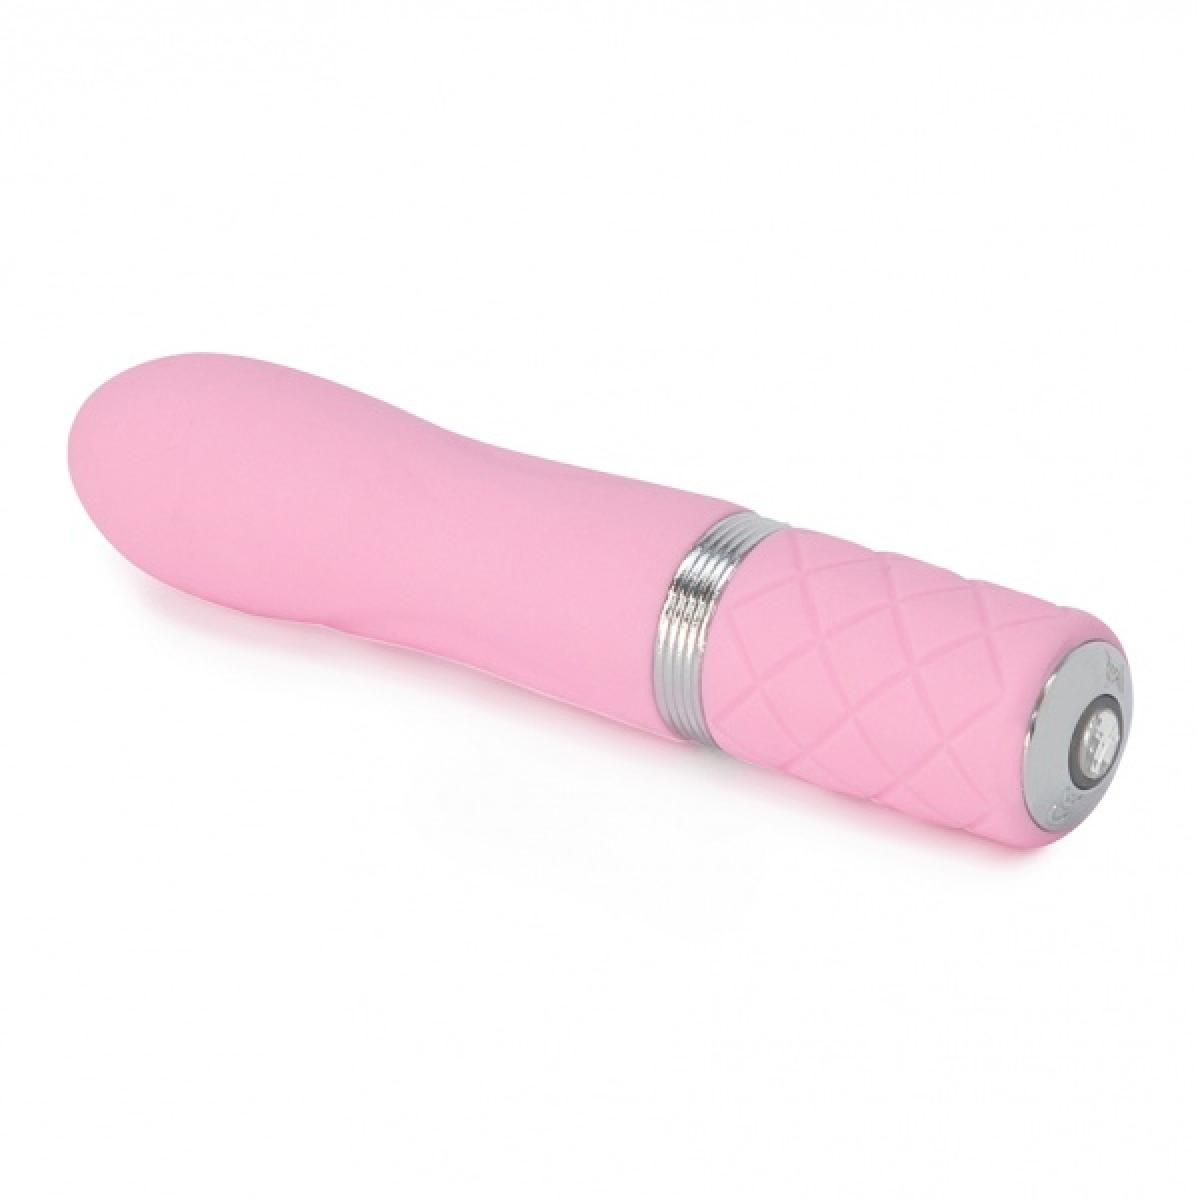 PILLOW TALK Talk Pillow - Flirty Mini-Vibrator mini-vibratoren Pink